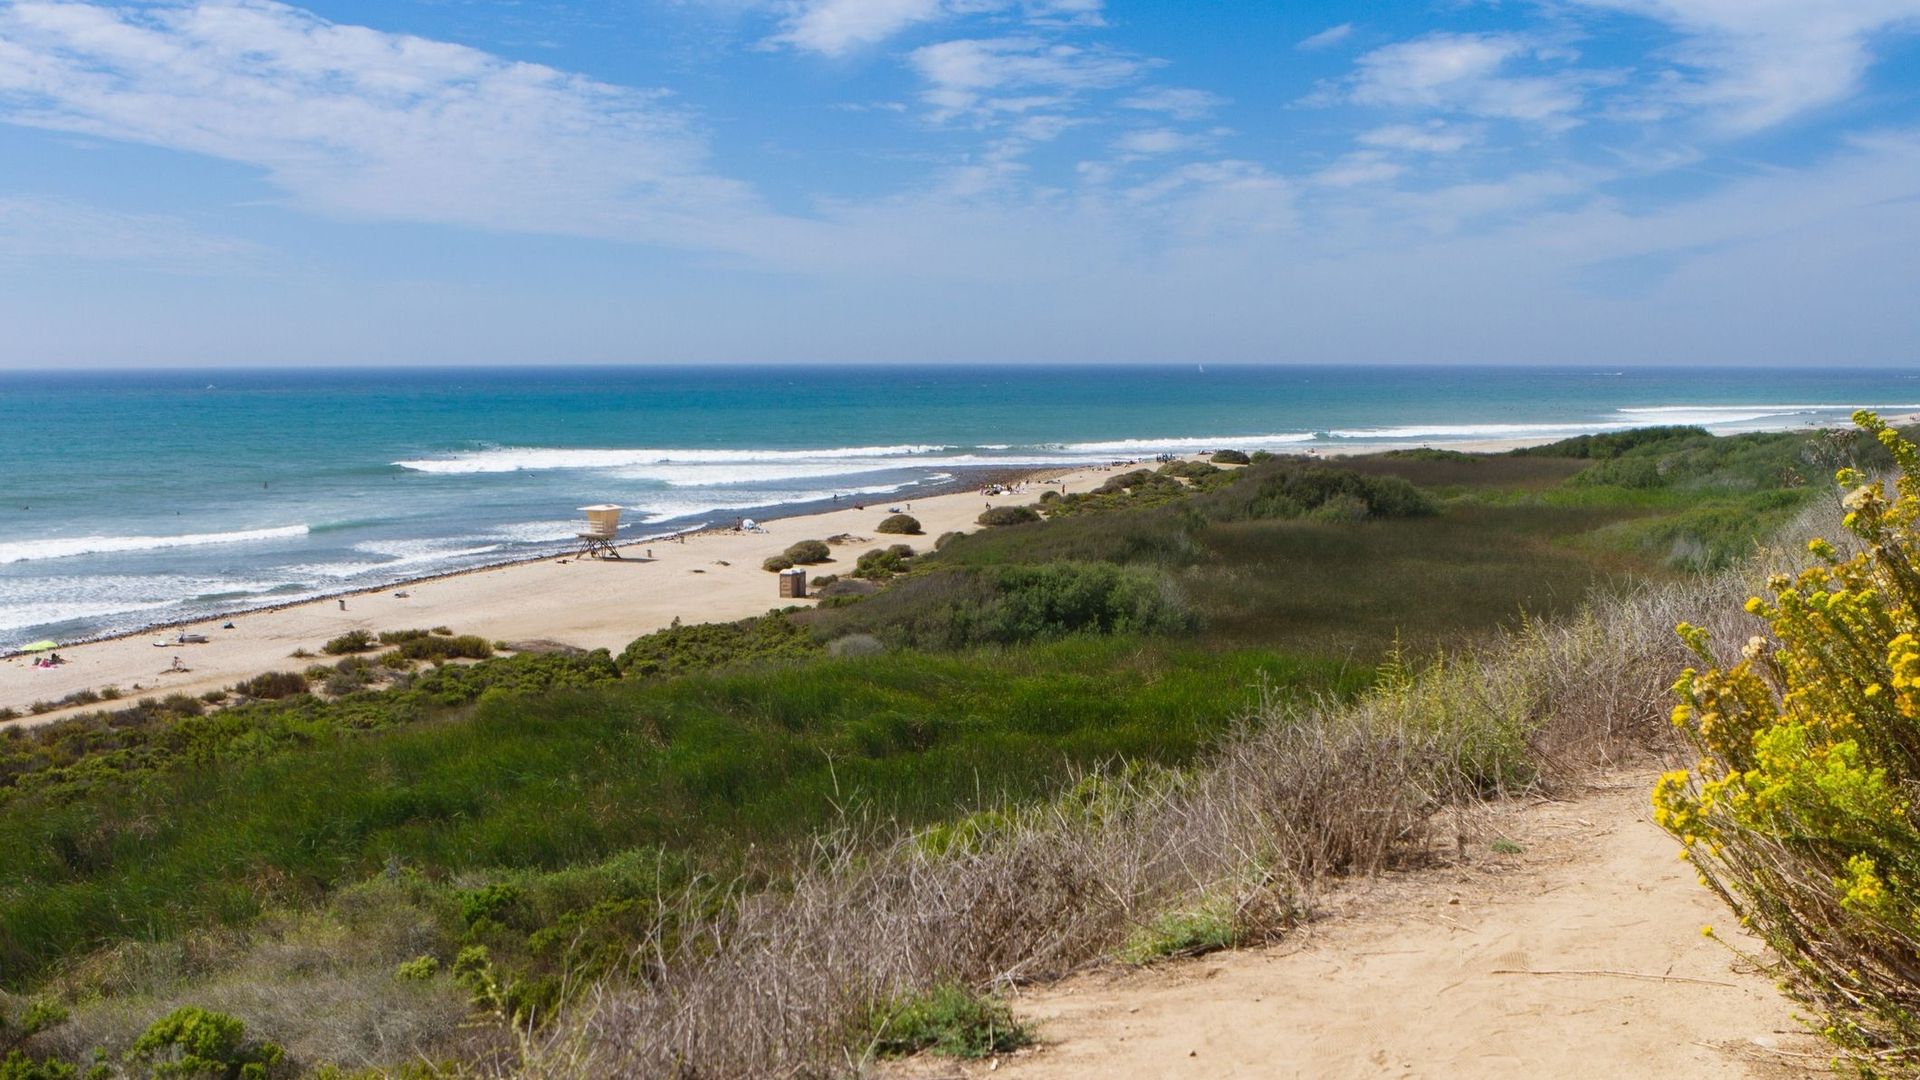 En Californie, l'océan avale la côte : voies ferrées, villas, plages...